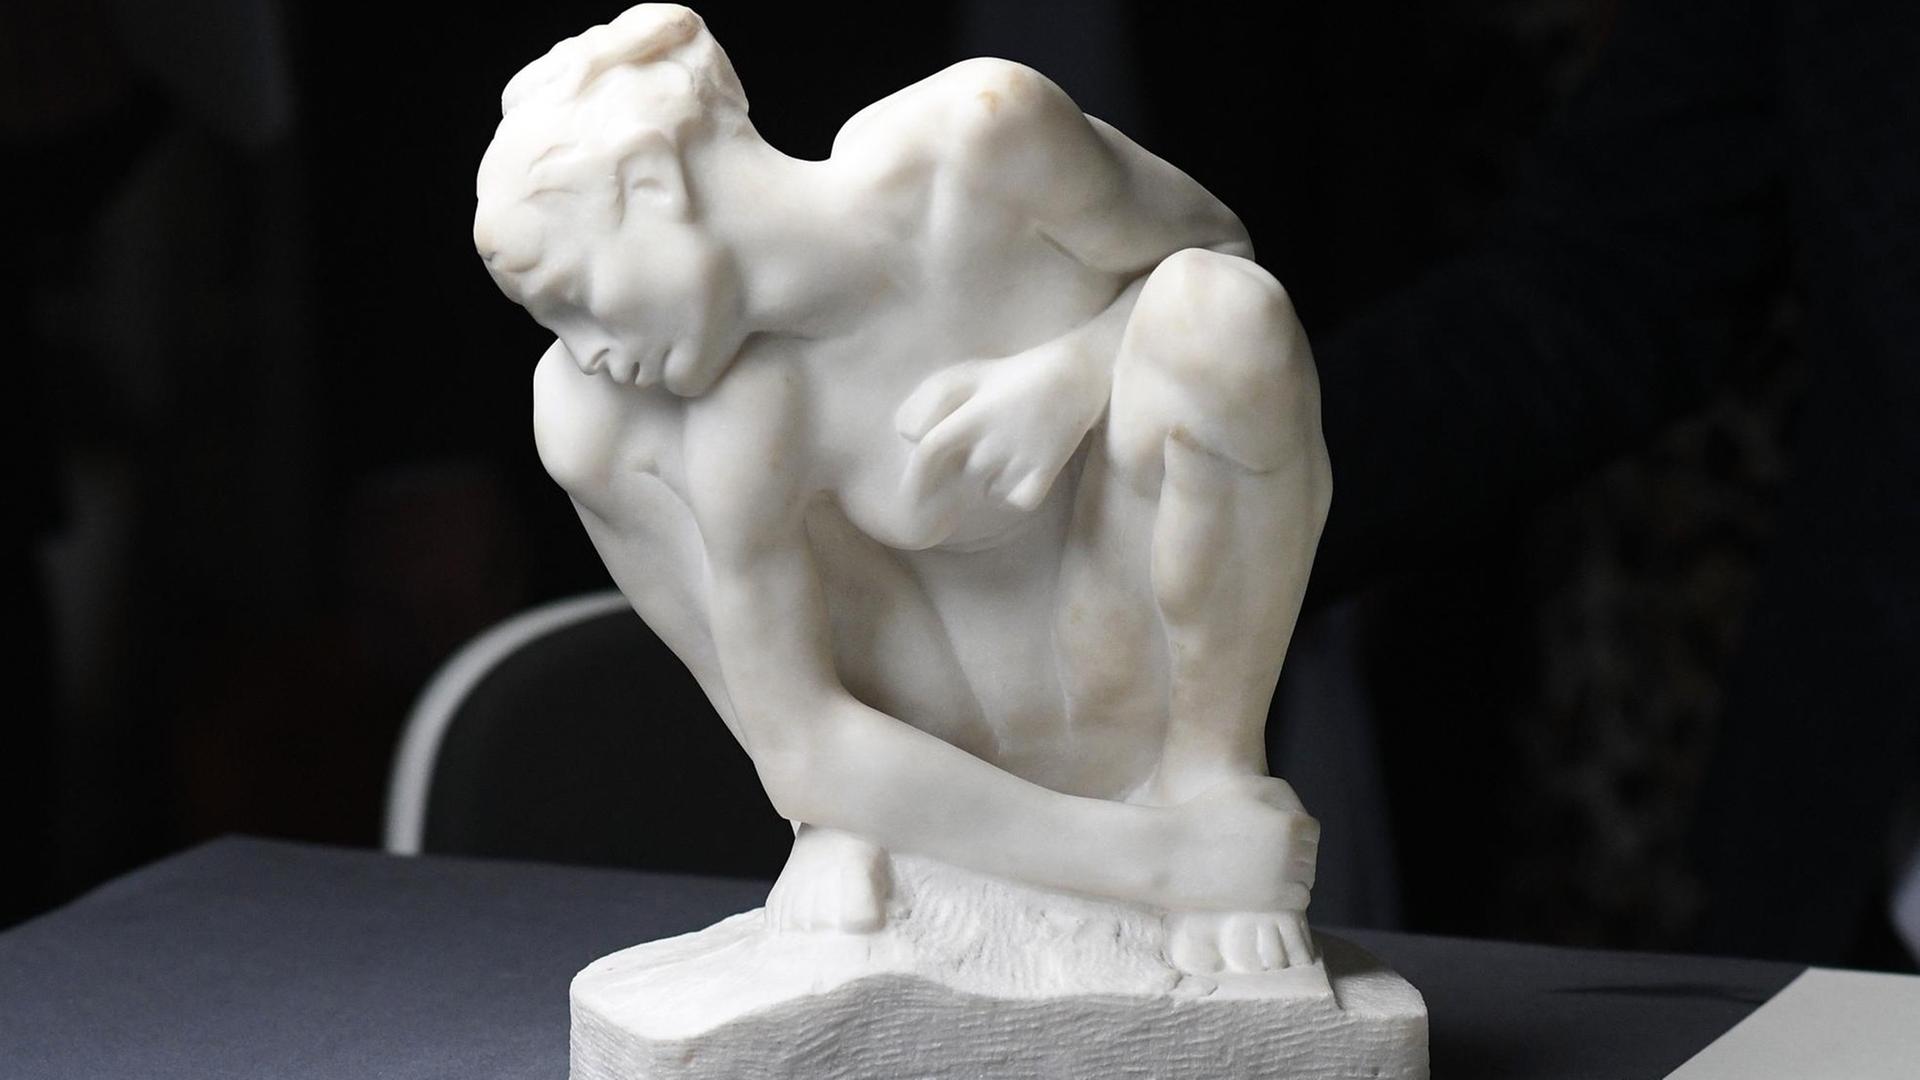 Das Werk «Kauernde» von Auguste Rodin (1840-1917) ist am 27.06.2017 in der Kunst und Ausstellungshalle in Bonn (Nordrhein-Westfalen) bei einem Pressegespräch zur Vorbereitung einer Ausstellung von exemplarische Werken aus dem Gurlitt-Fund im November 2017 zu sehen. Foto: Henning Kaiser/dpa | Verwendung weltweit